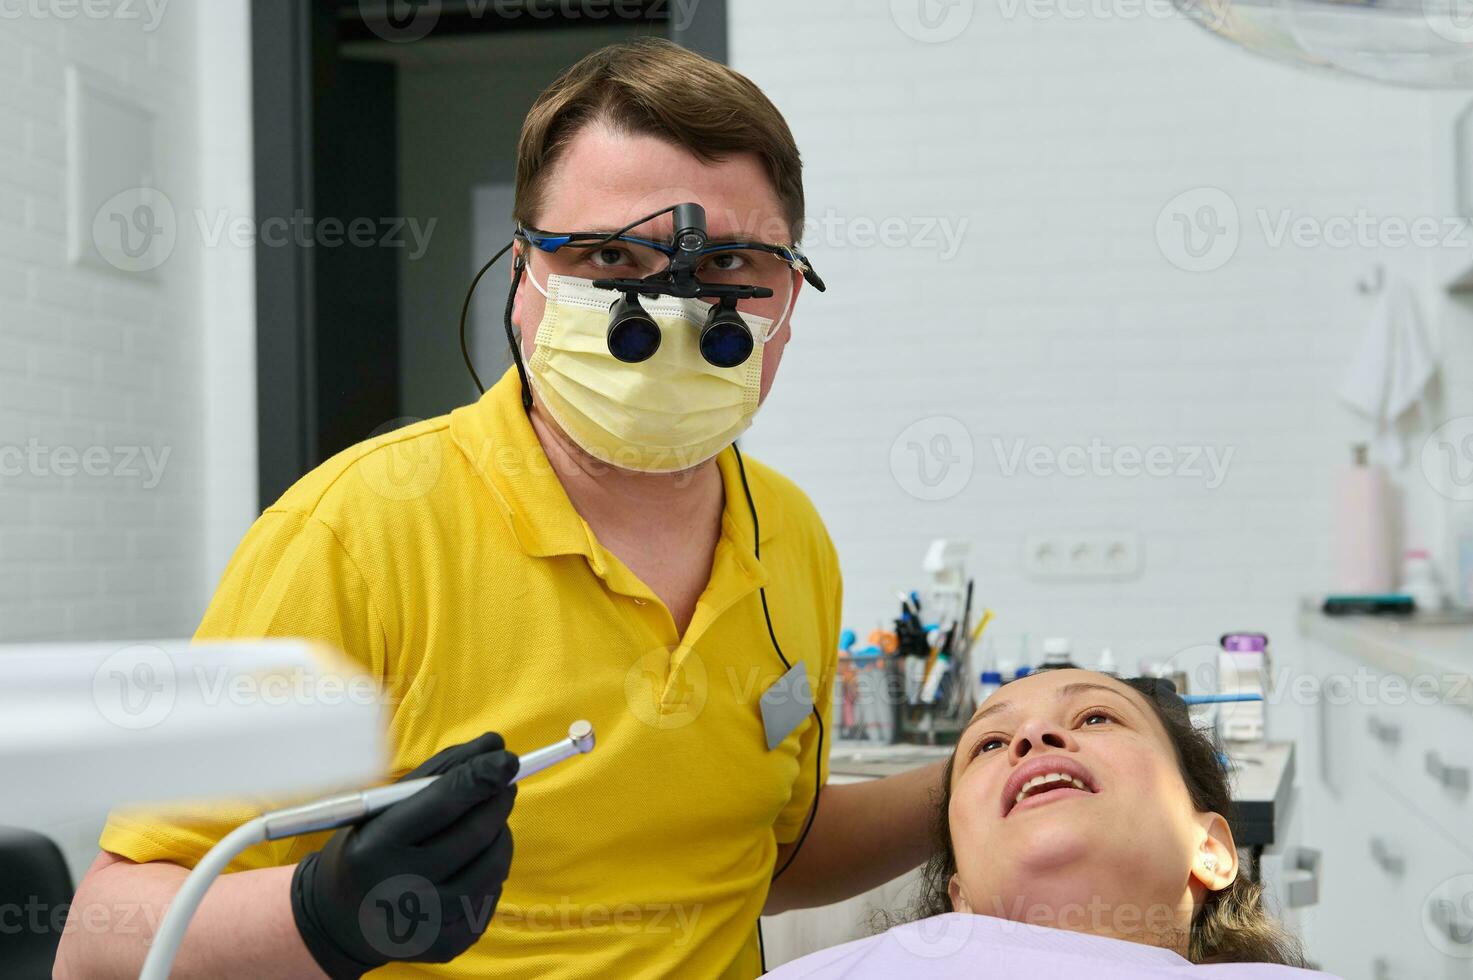 dentista en ortodoncista prismáticos, sostiene dental perforar, realiza dientes tratamiento a embarazada paciente en odontología clínica foto